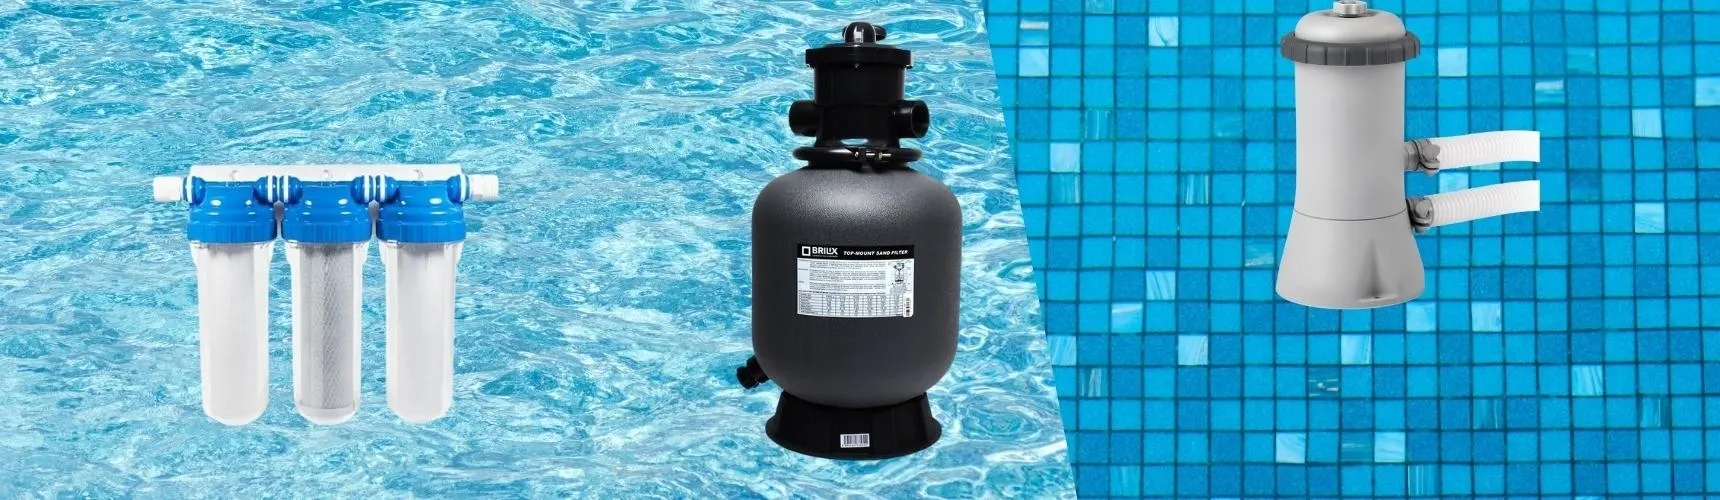 Možnosti filtrování bazénové vody